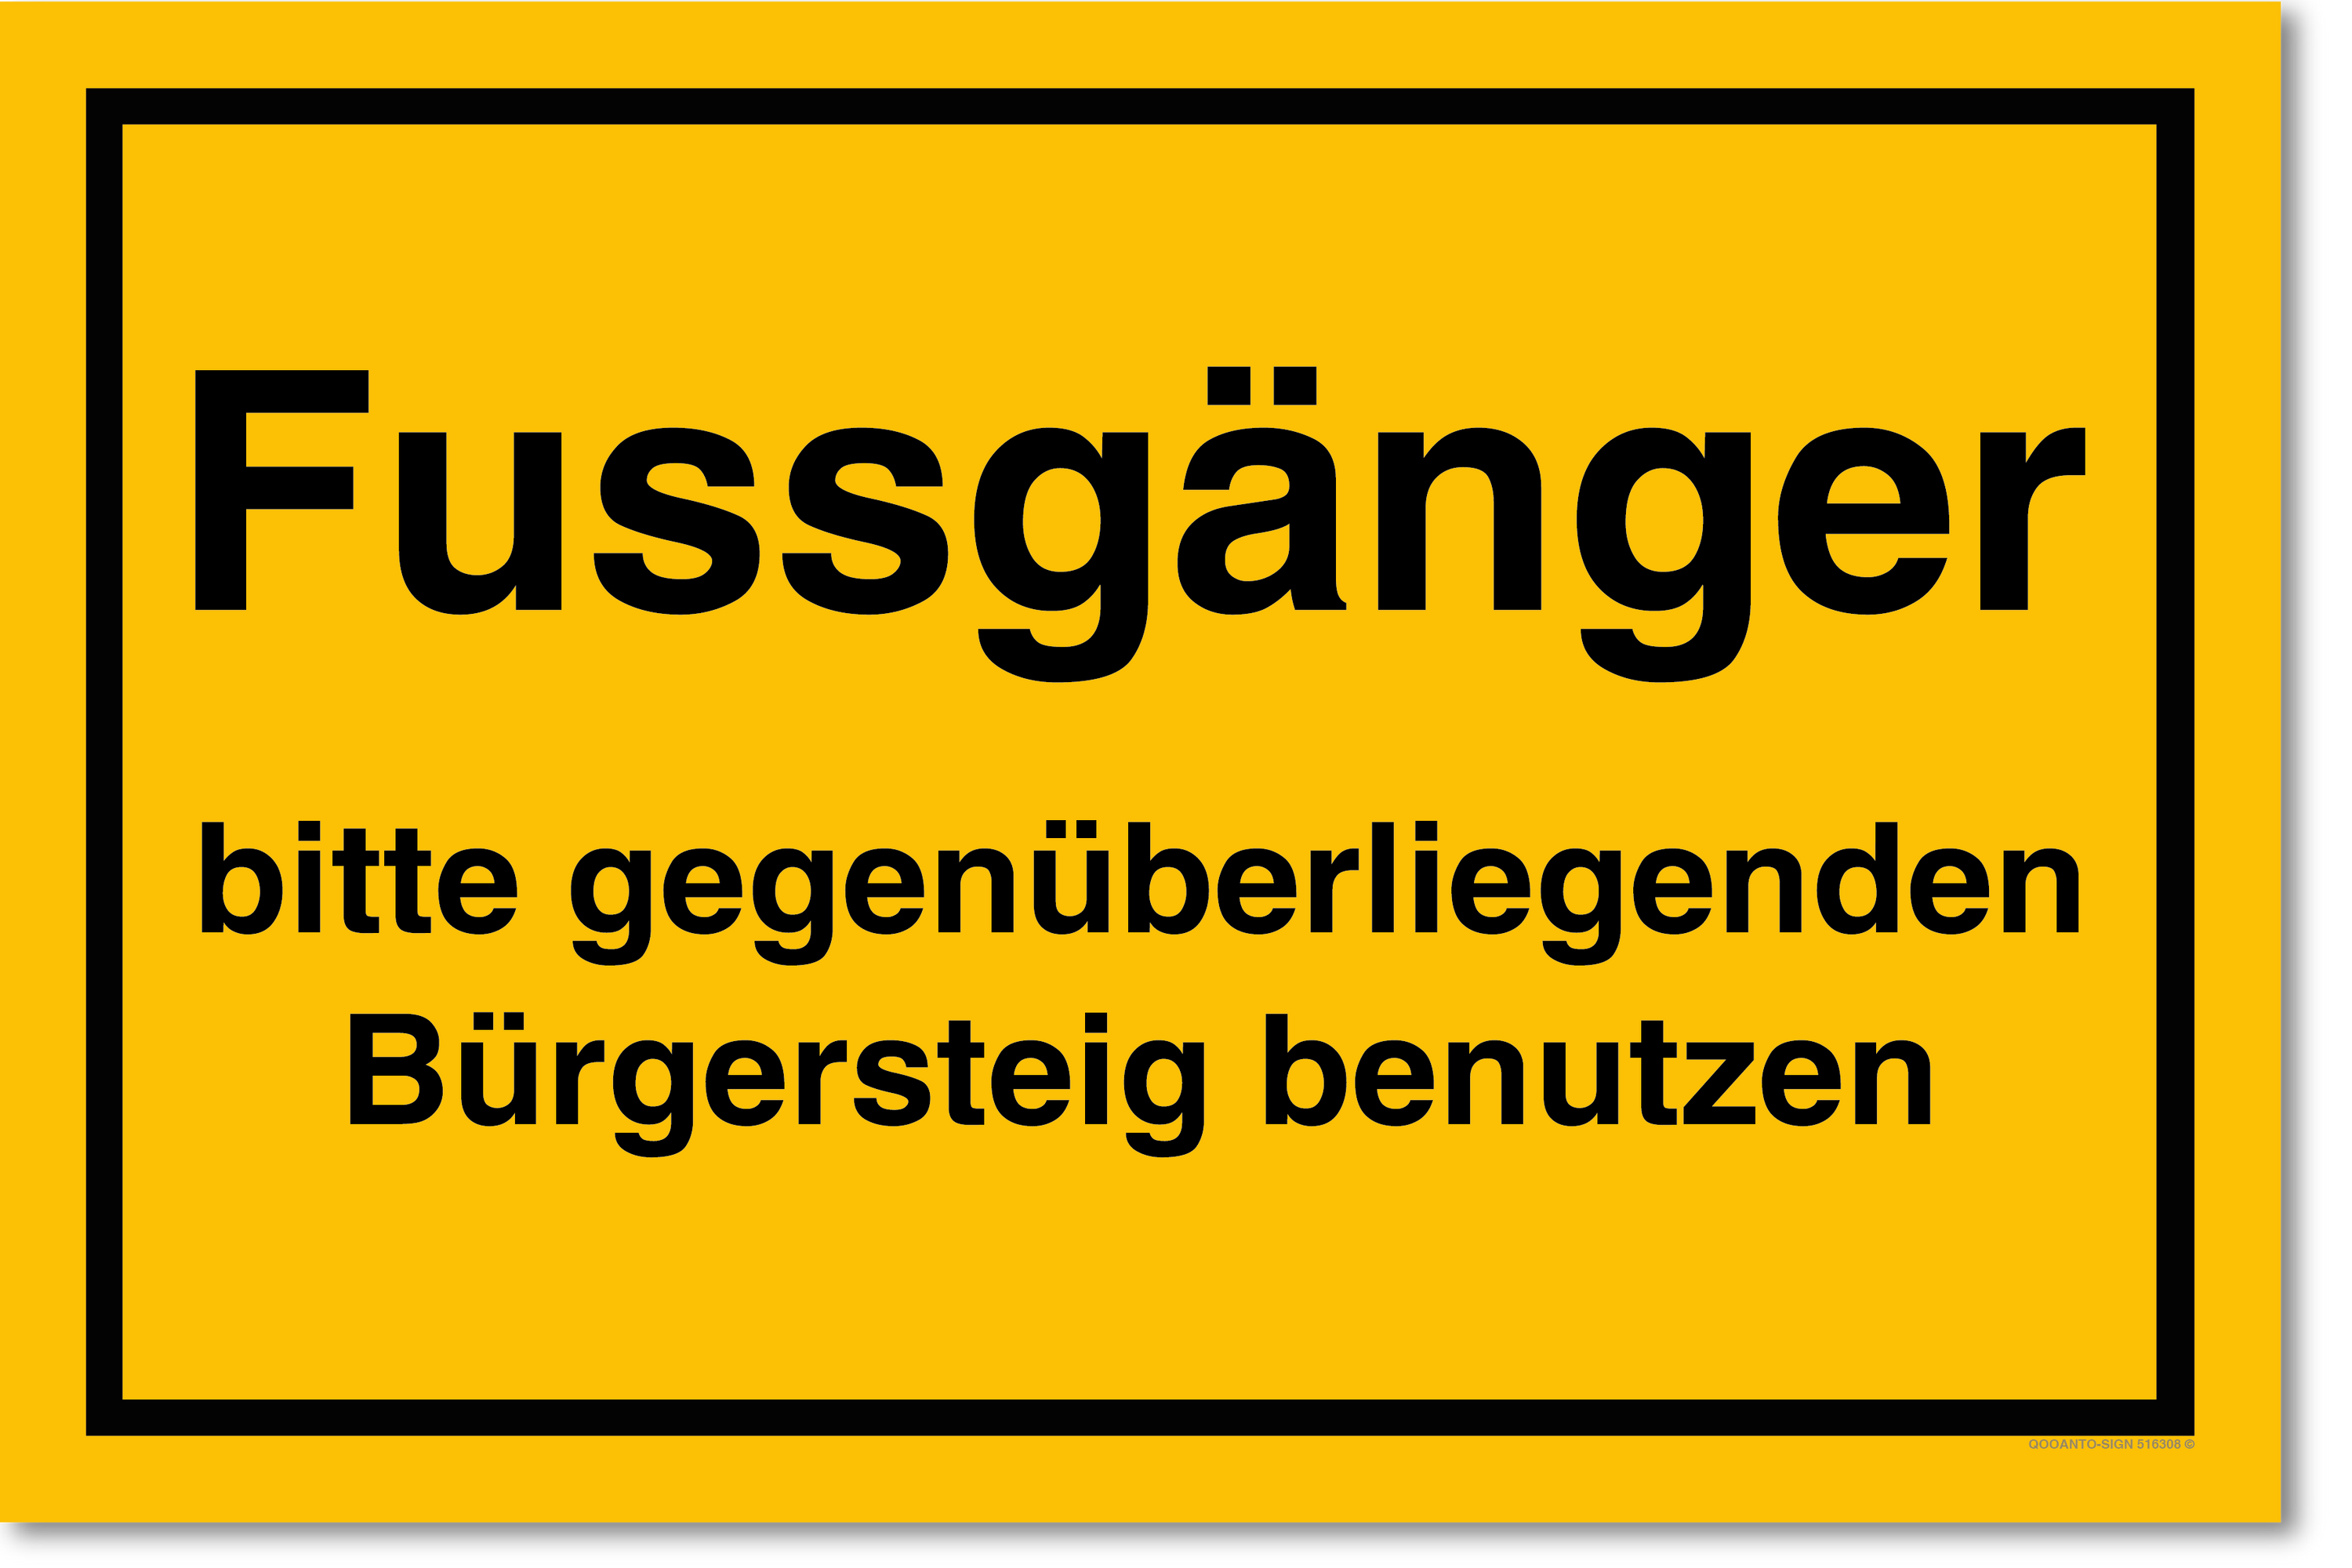 Fussgänger bitte gegenüberliegende Bürgersteig benutzen, gelb, Schild